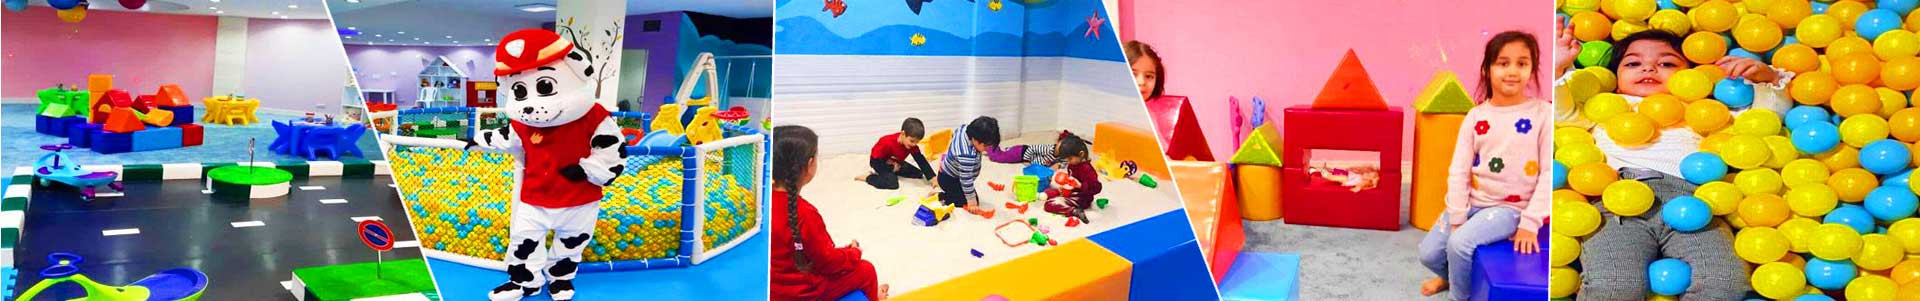 بهترین خرید خانه بازی Kids Planet تهران با بیشترین درصد تخفیف در قیمت - 50%